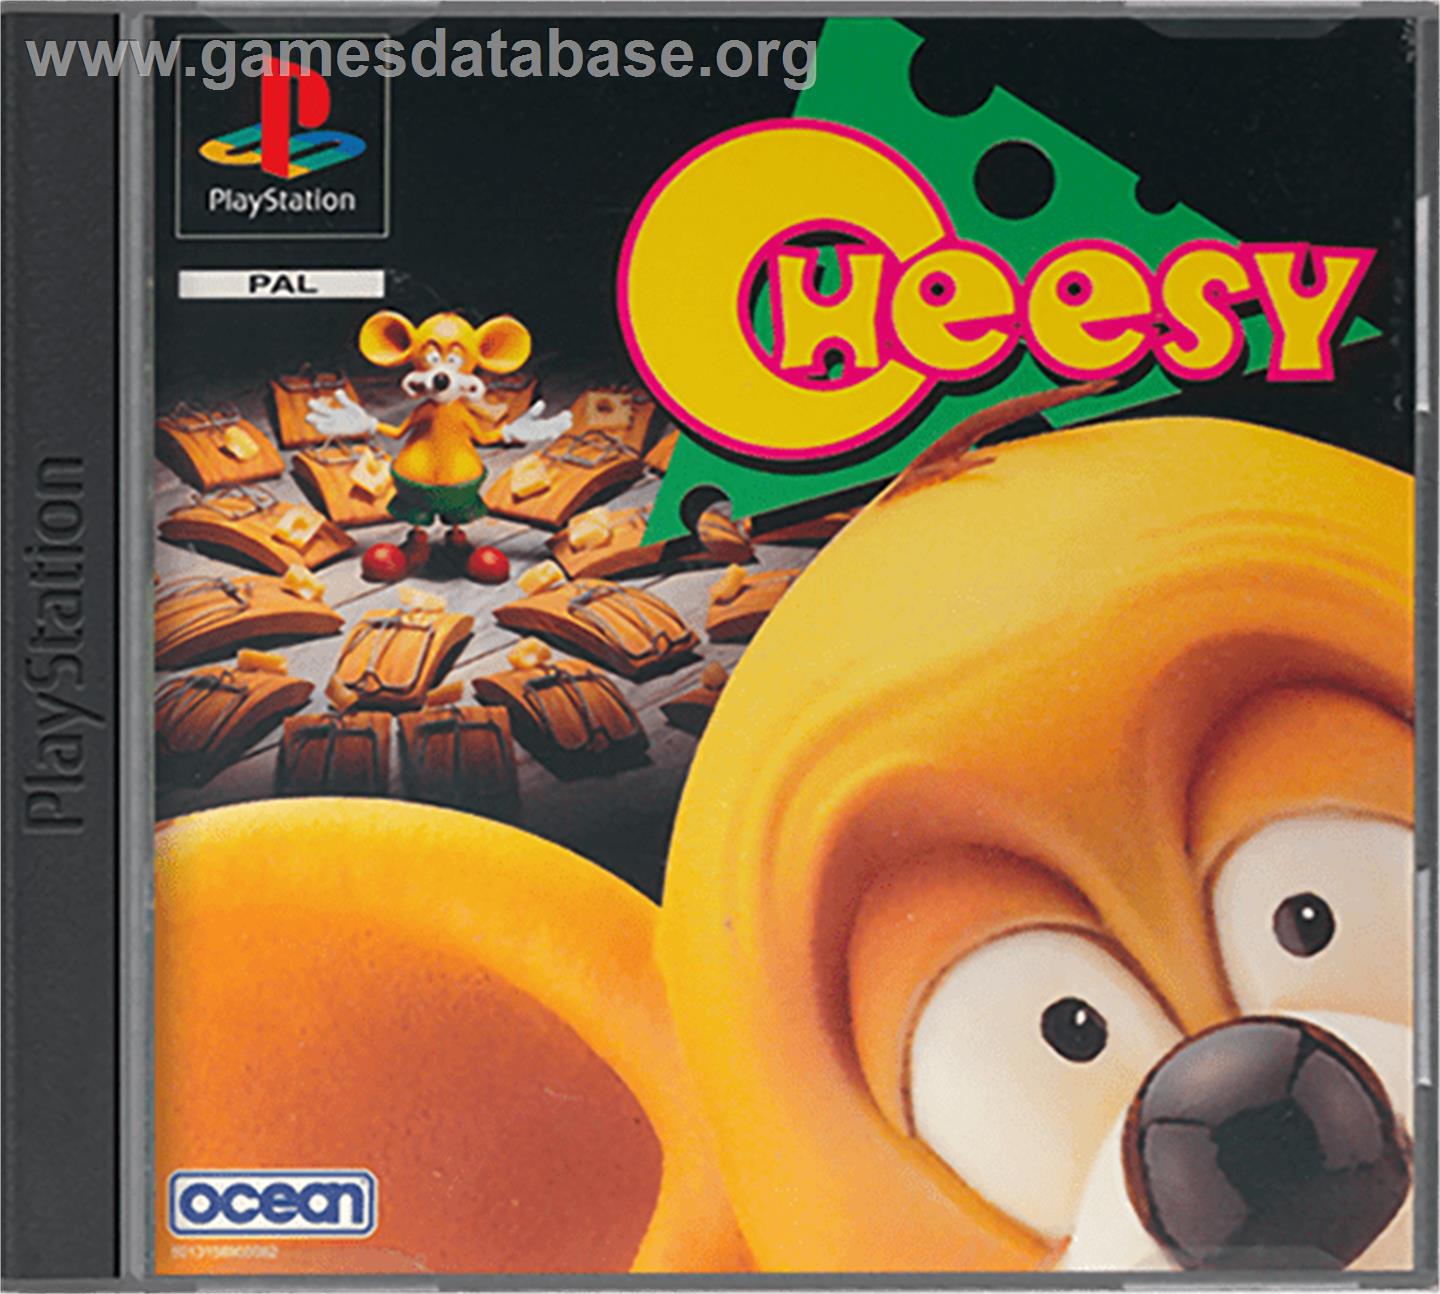 Cheesy - Sony Playstation - Artwork - Box